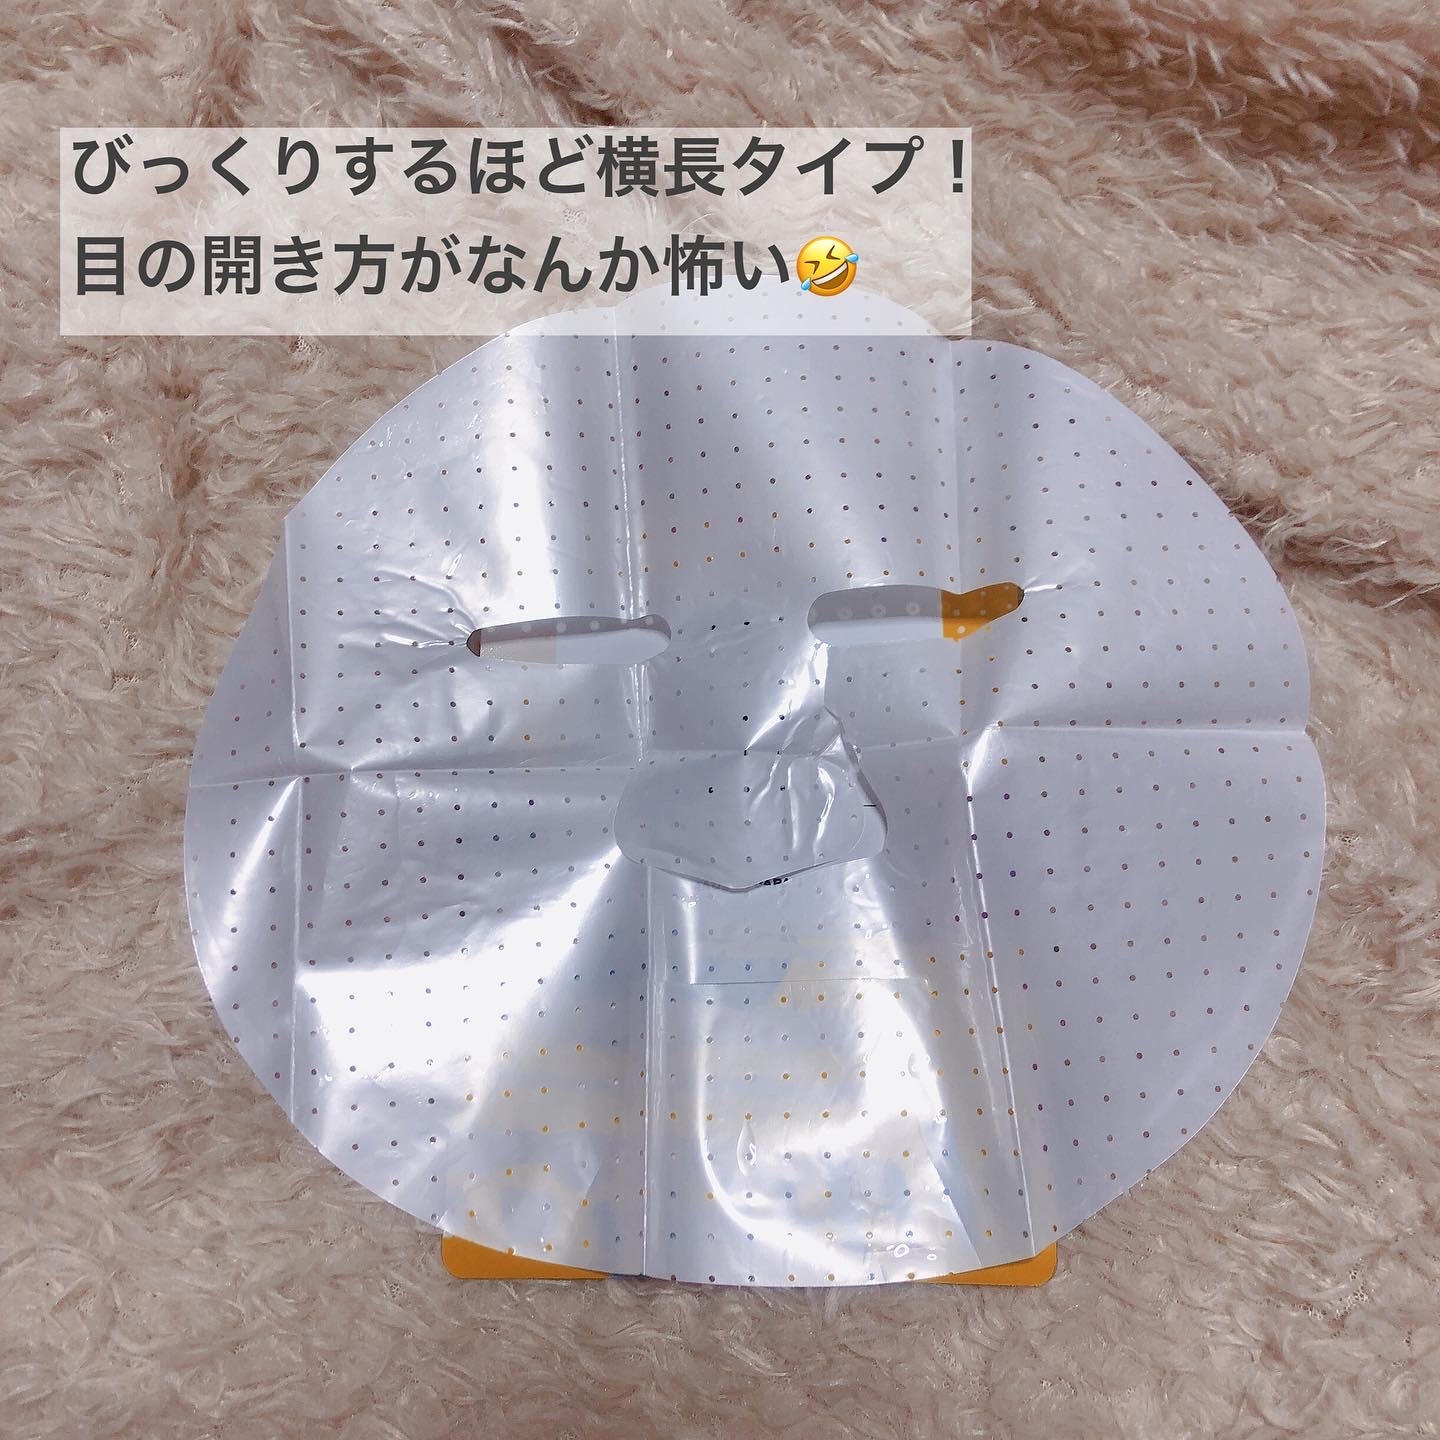 KISO(キソ) EGF シートマスクの良い点・メリットに関するyungさんの口コミ画像3